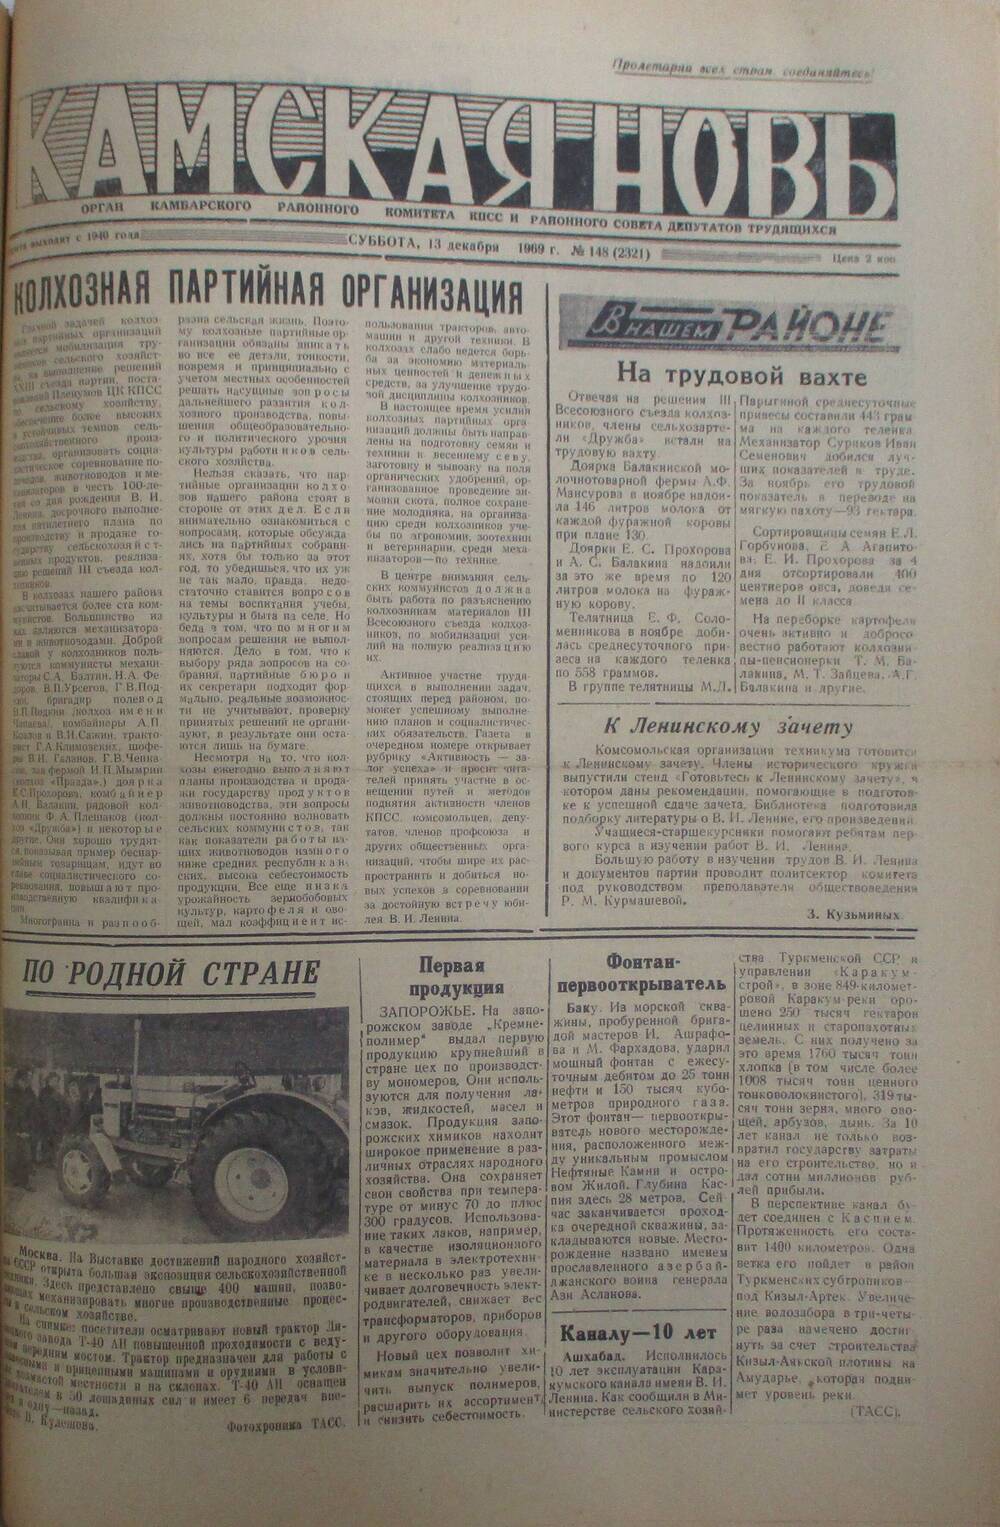 Газеты Камская новь за 1969 год, орган Камбарского райсовета и  РККПСС, с №1 по №66, с №68 по №156. №148.